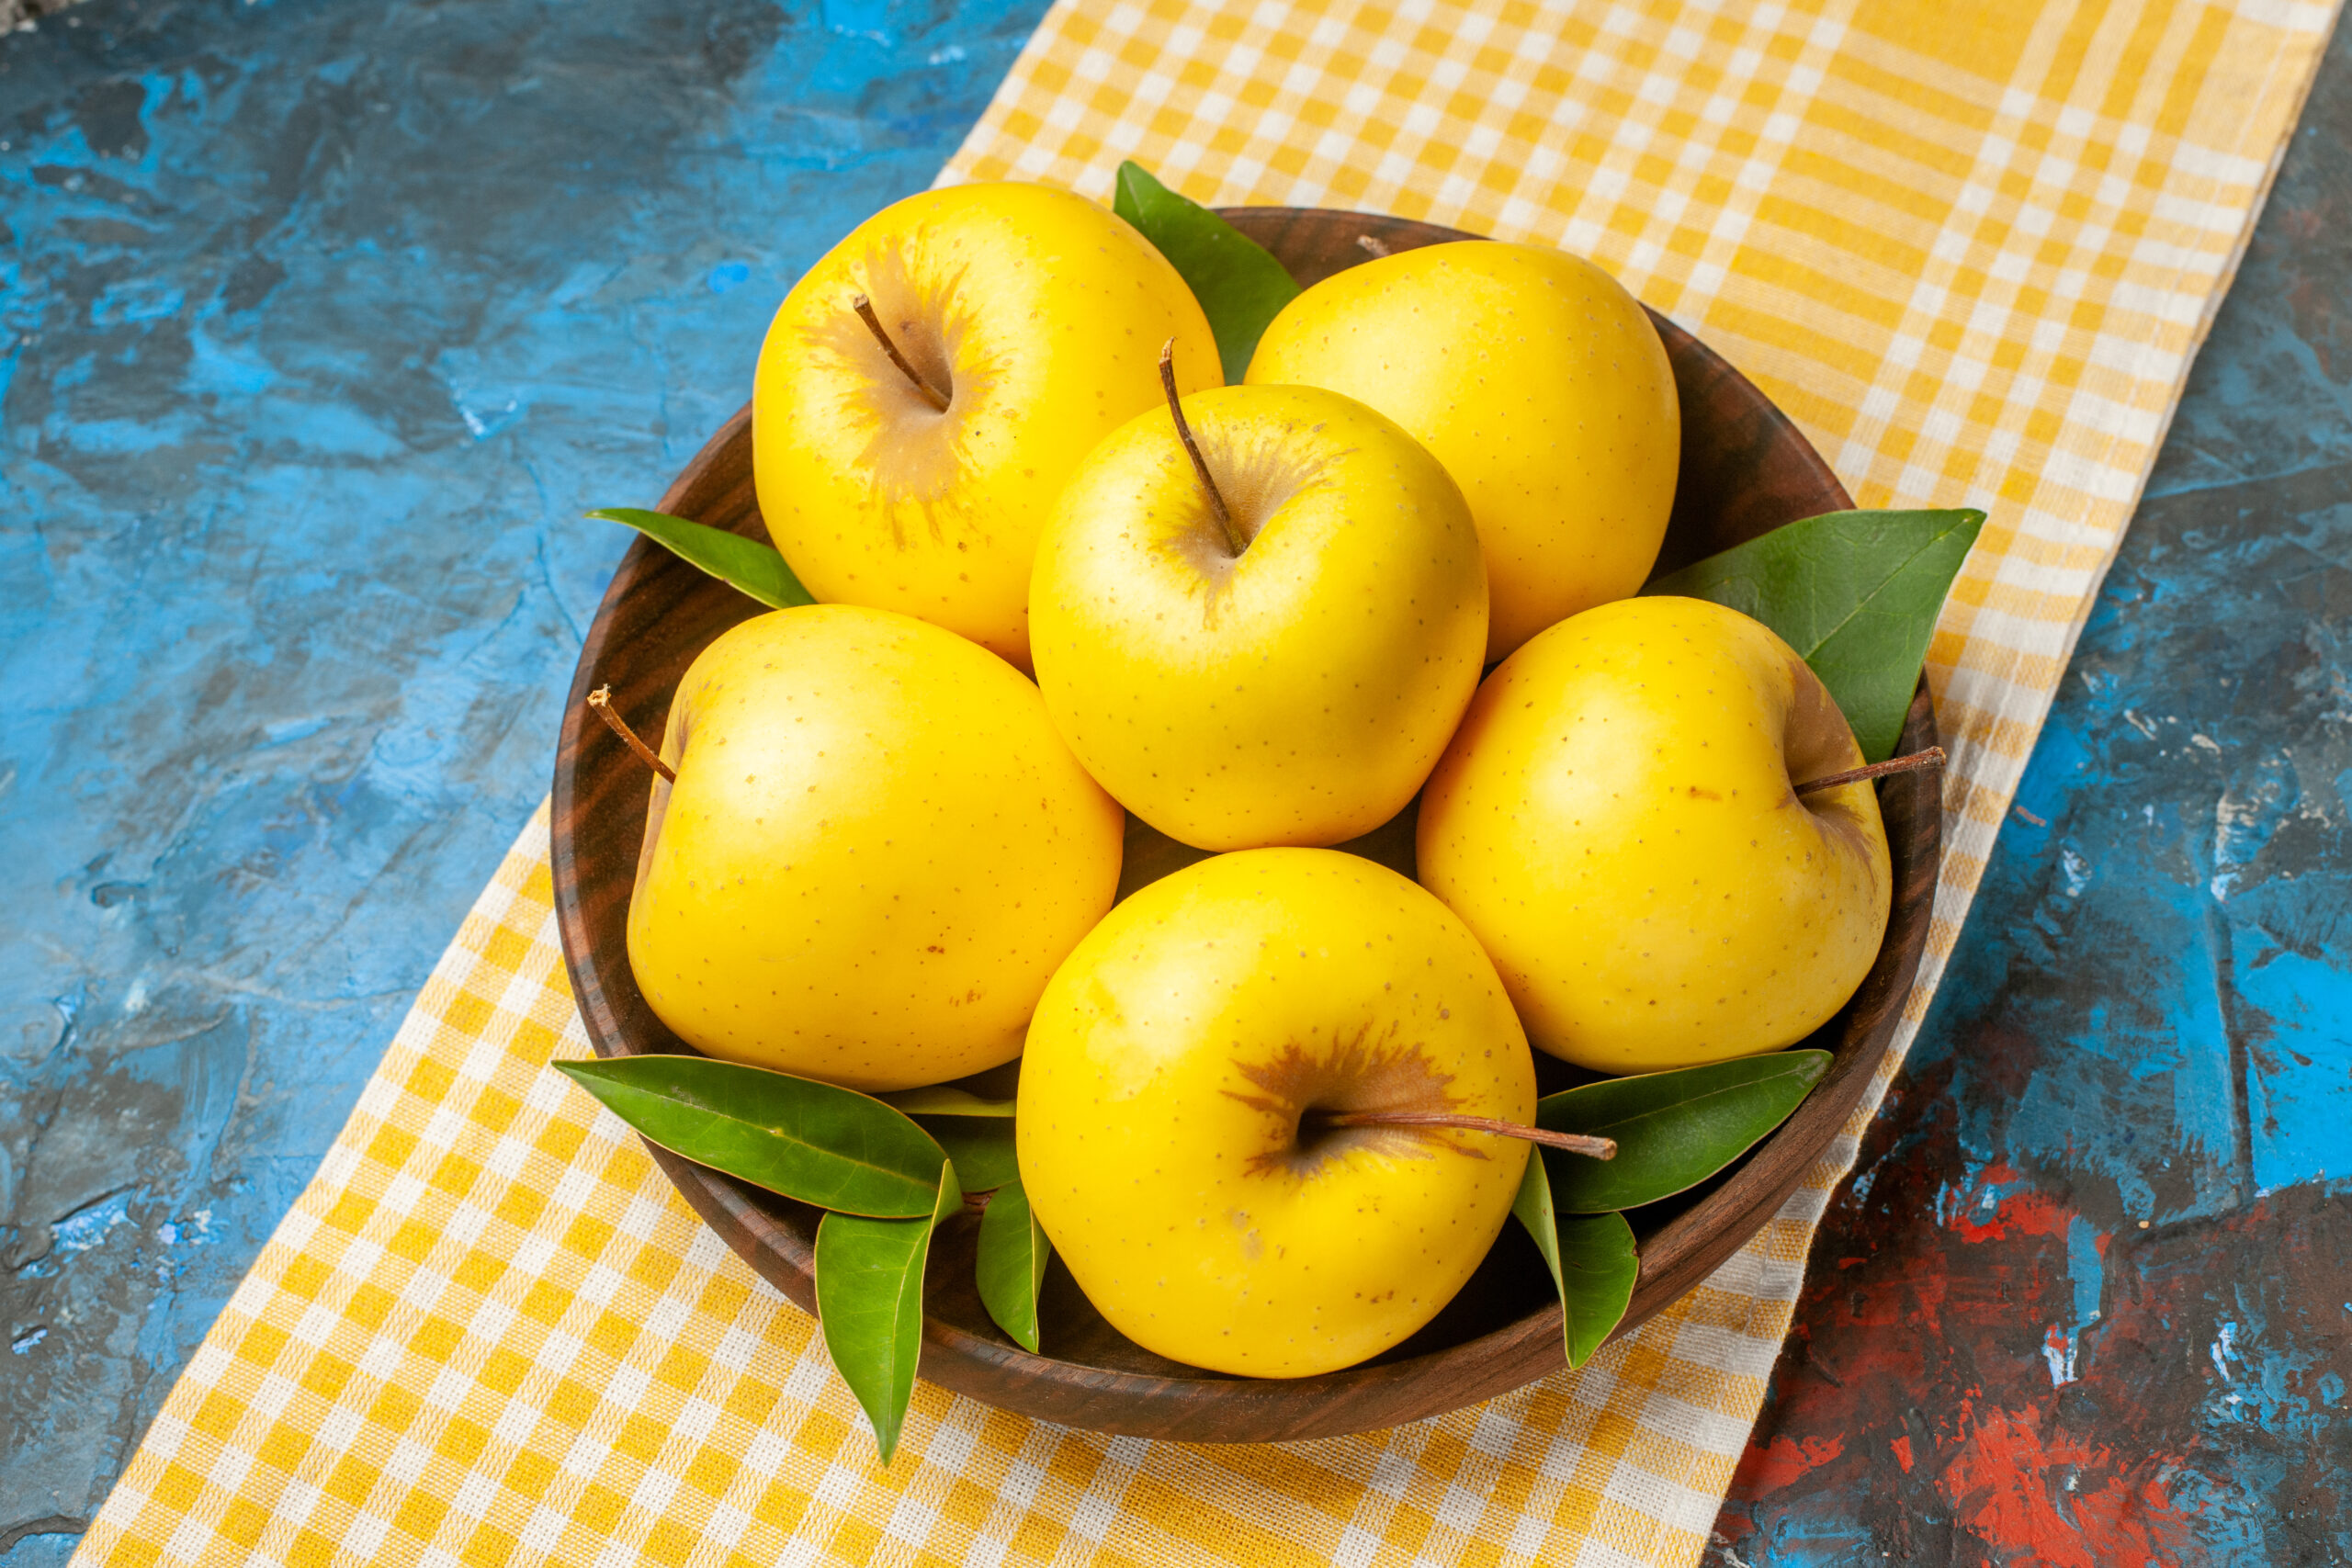 Golden apples | https://fruitsauction.com/